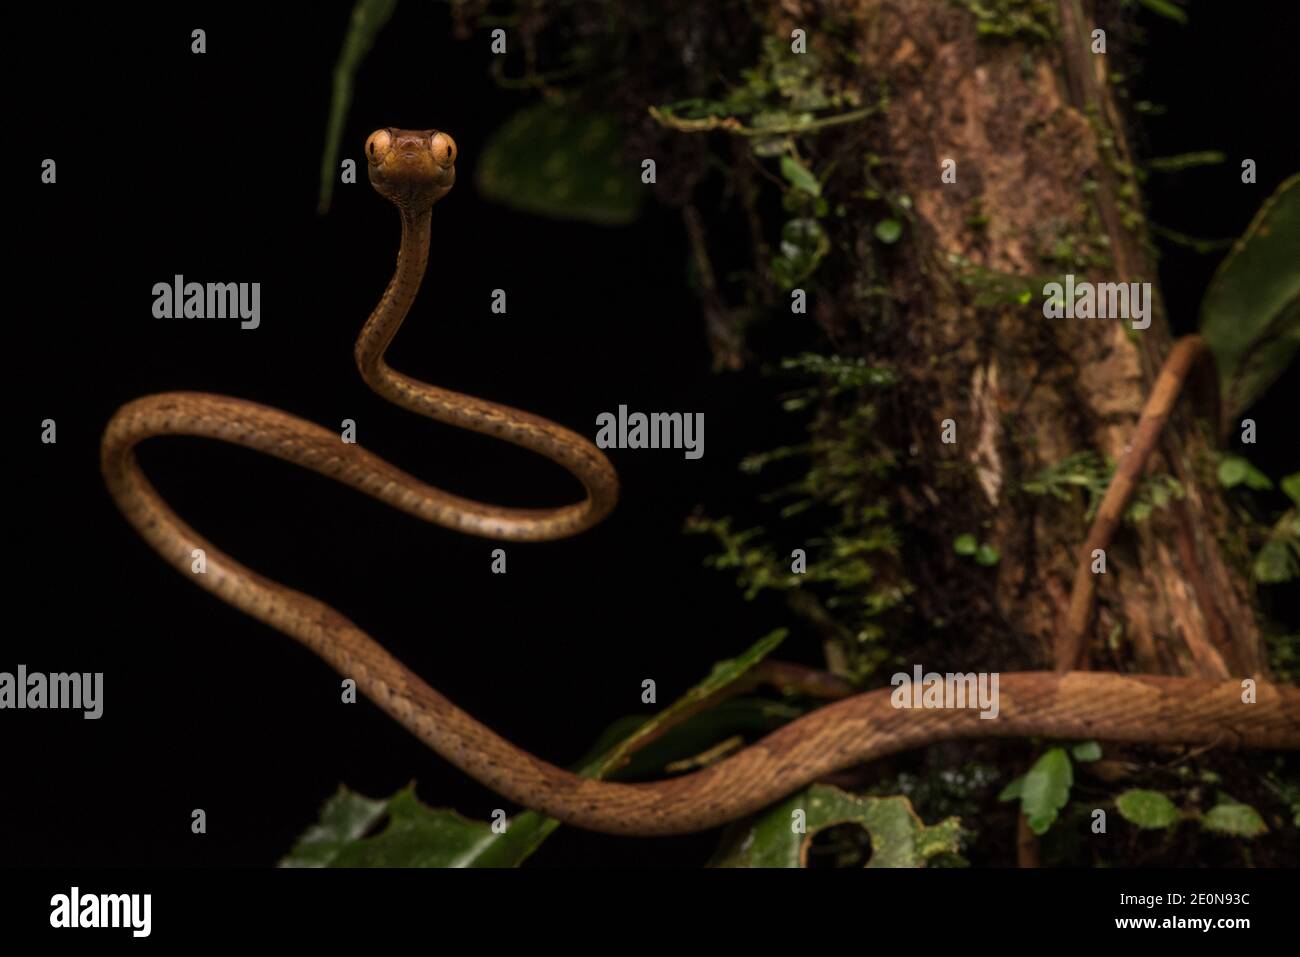 Eine gelbe, stumpfe Baumschlange (Imantodes inornatus) mit Blick auf die Kamera zeigt ihre komisch riesigen Augen - gut angepasst an ihre nächtlichen Gewohnheiten. Stockfoto